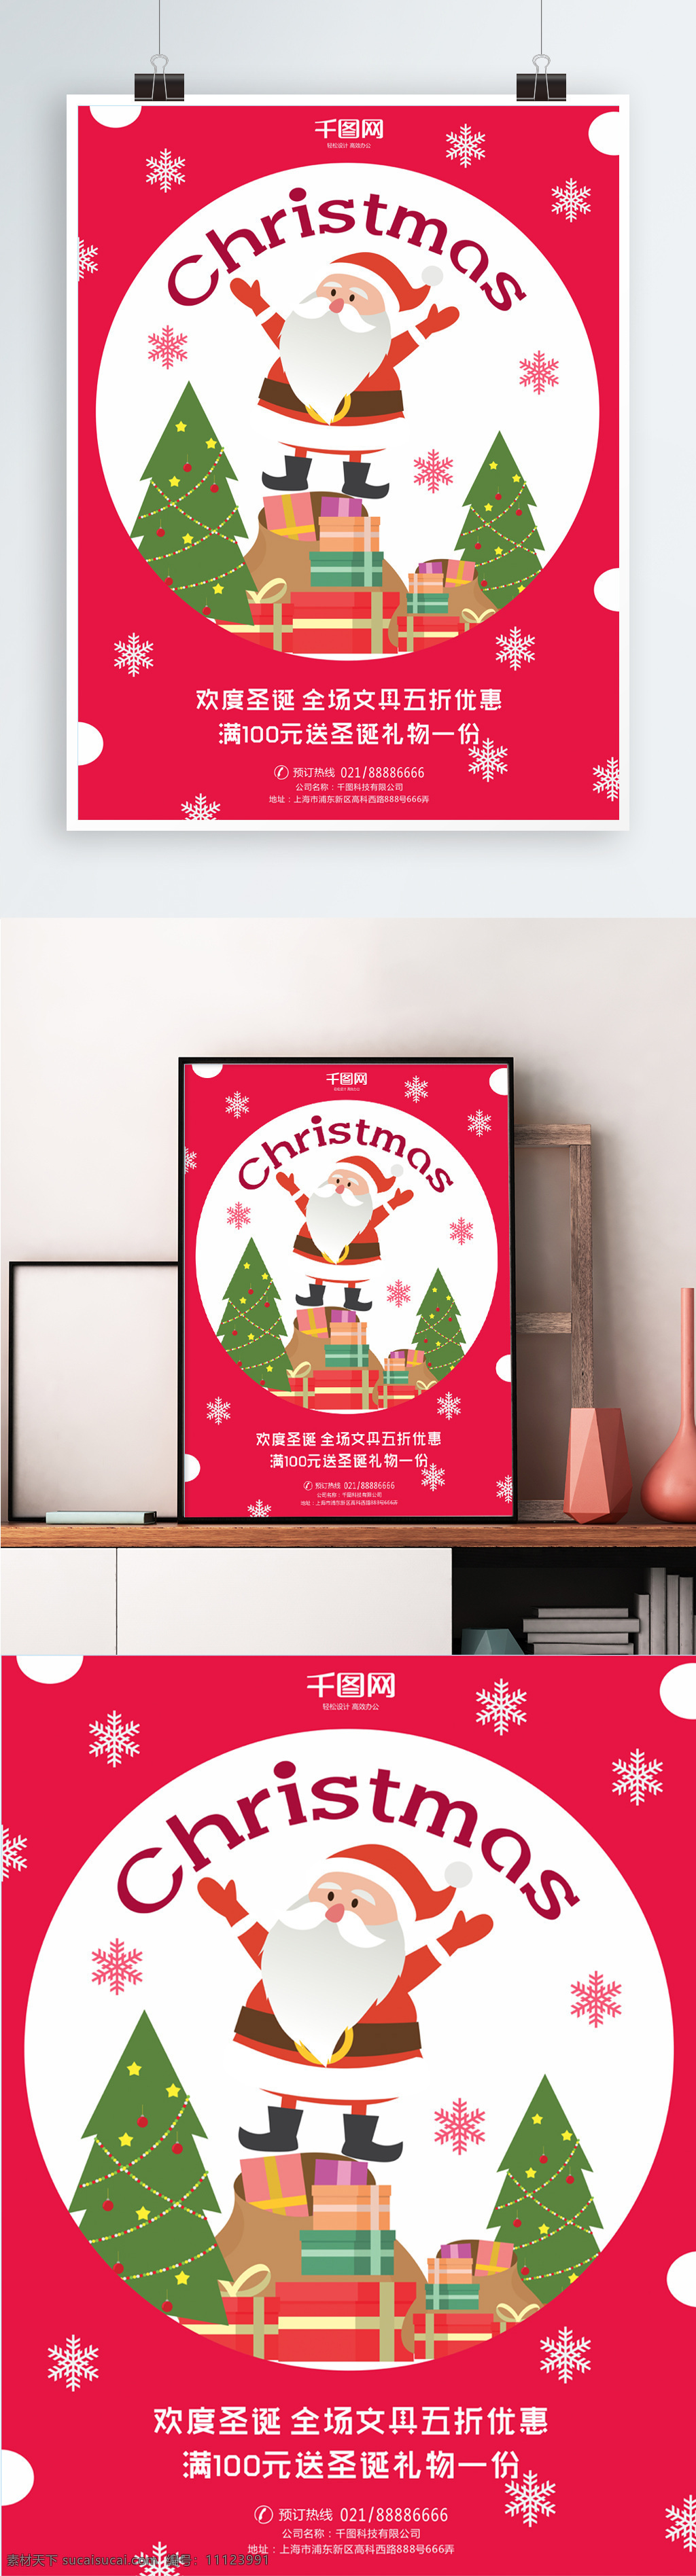 文具店 圣诞节 可爱 宣传海报 卡通 圣诞树 圣诞 圣诞老人 喜庆 枚红色 雪花